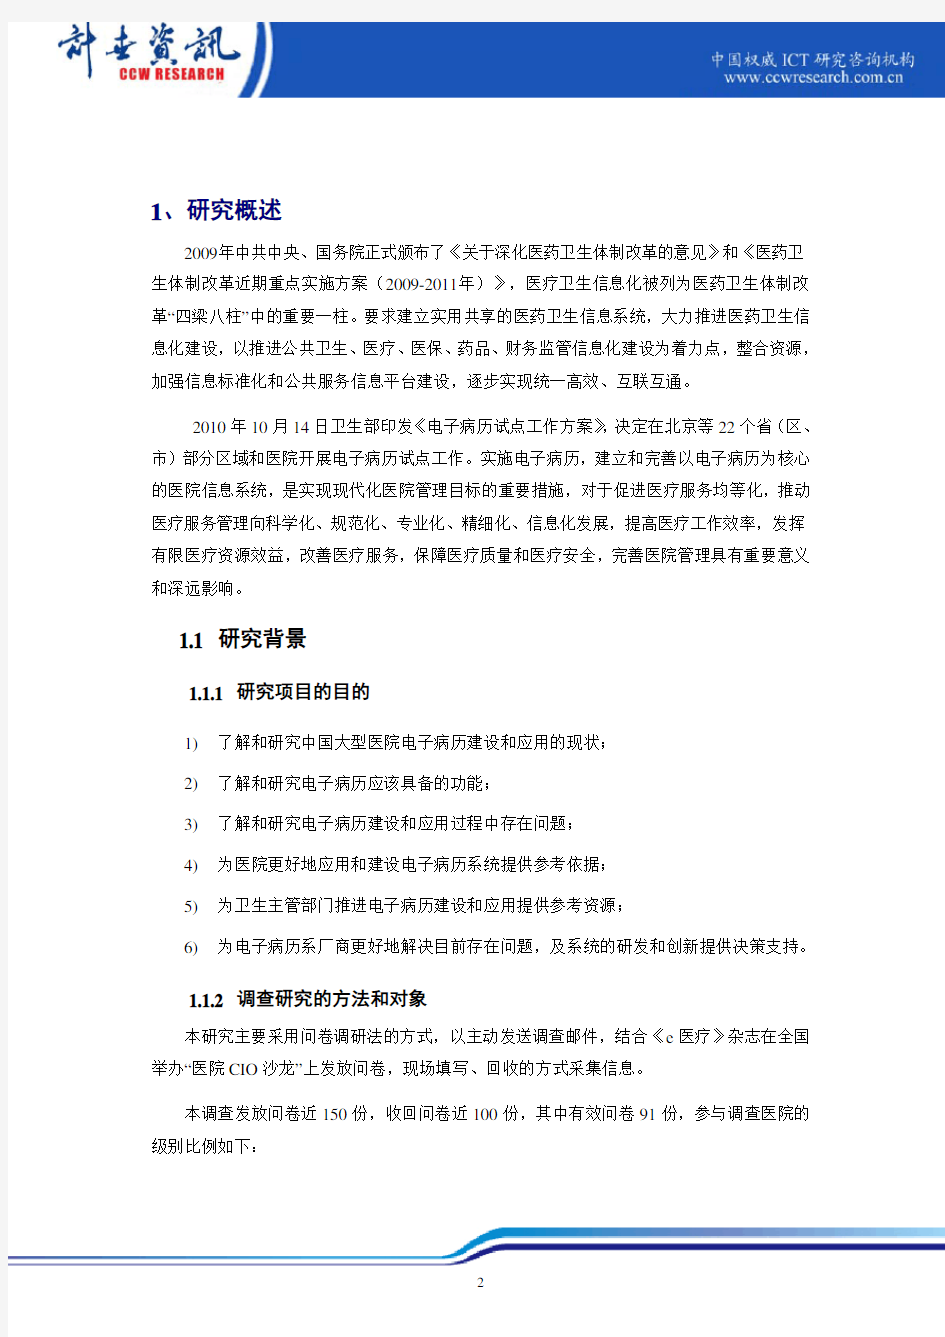 中国大型医院电子病历应用状况调研报告